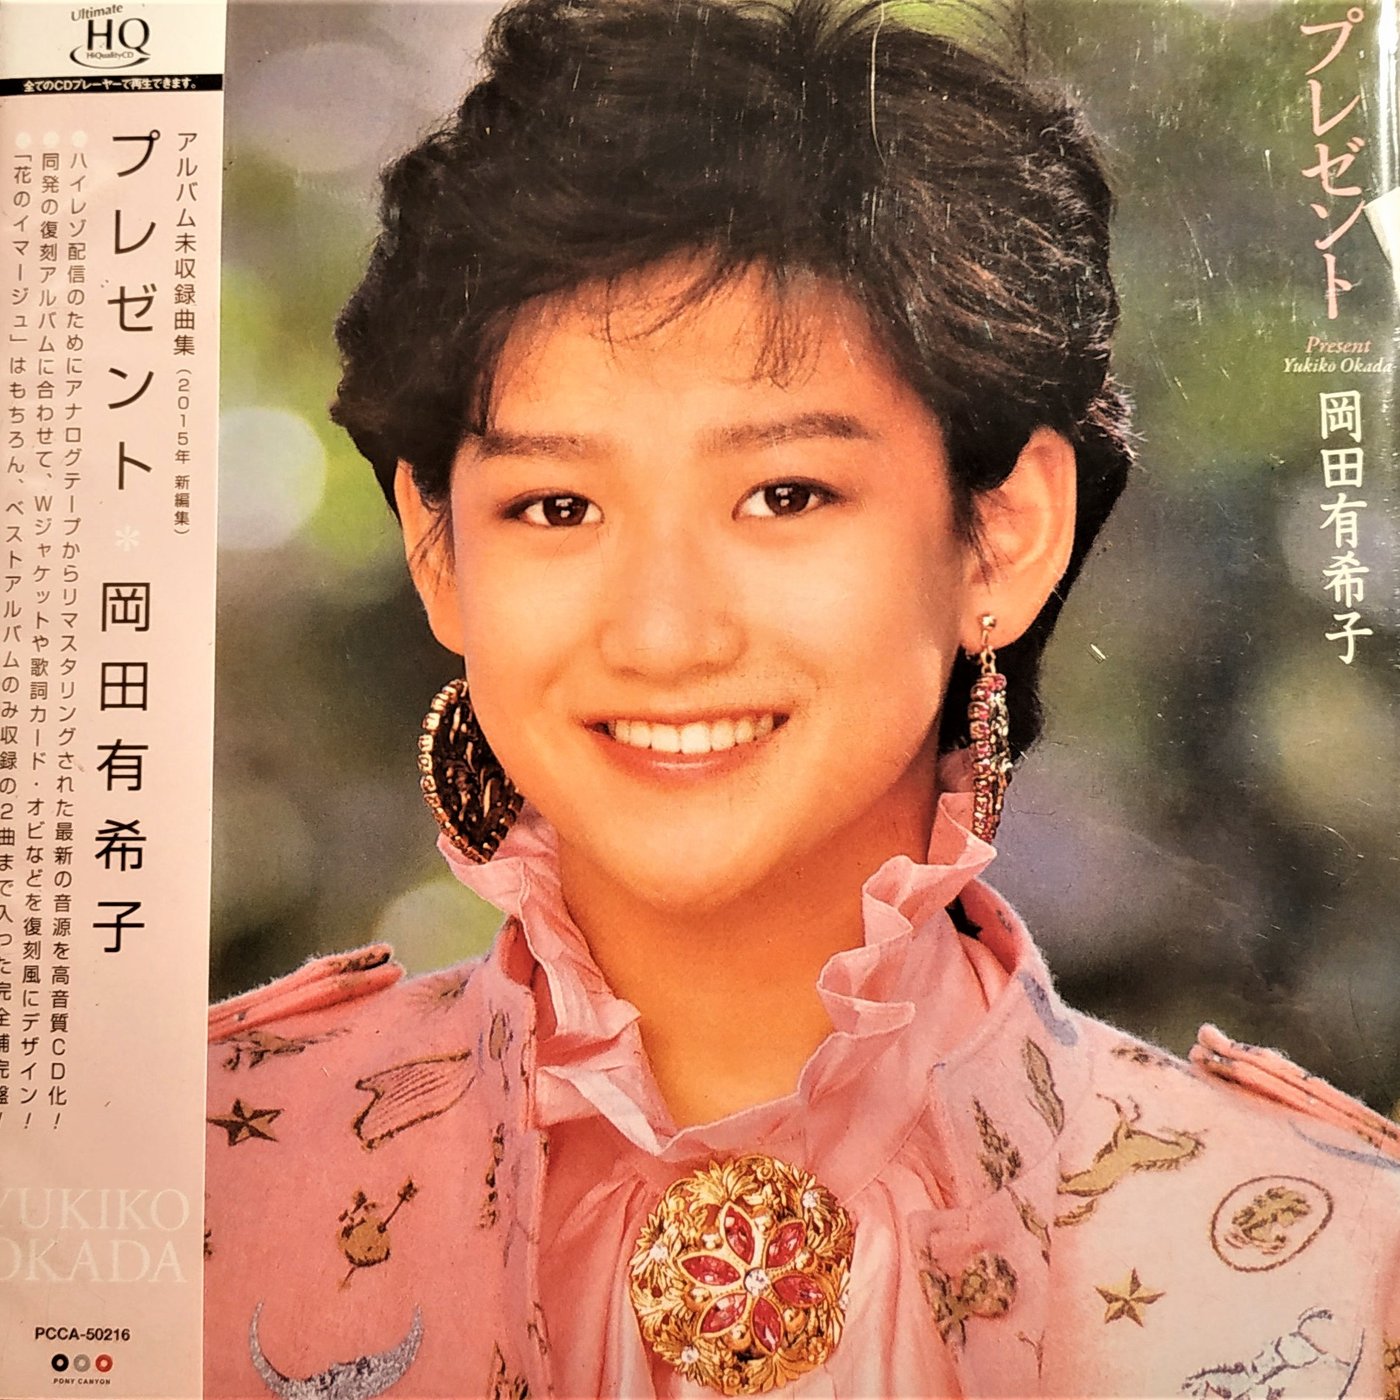 岡田有希子 CD アルバム未収録集 プレゼント(HQCD)